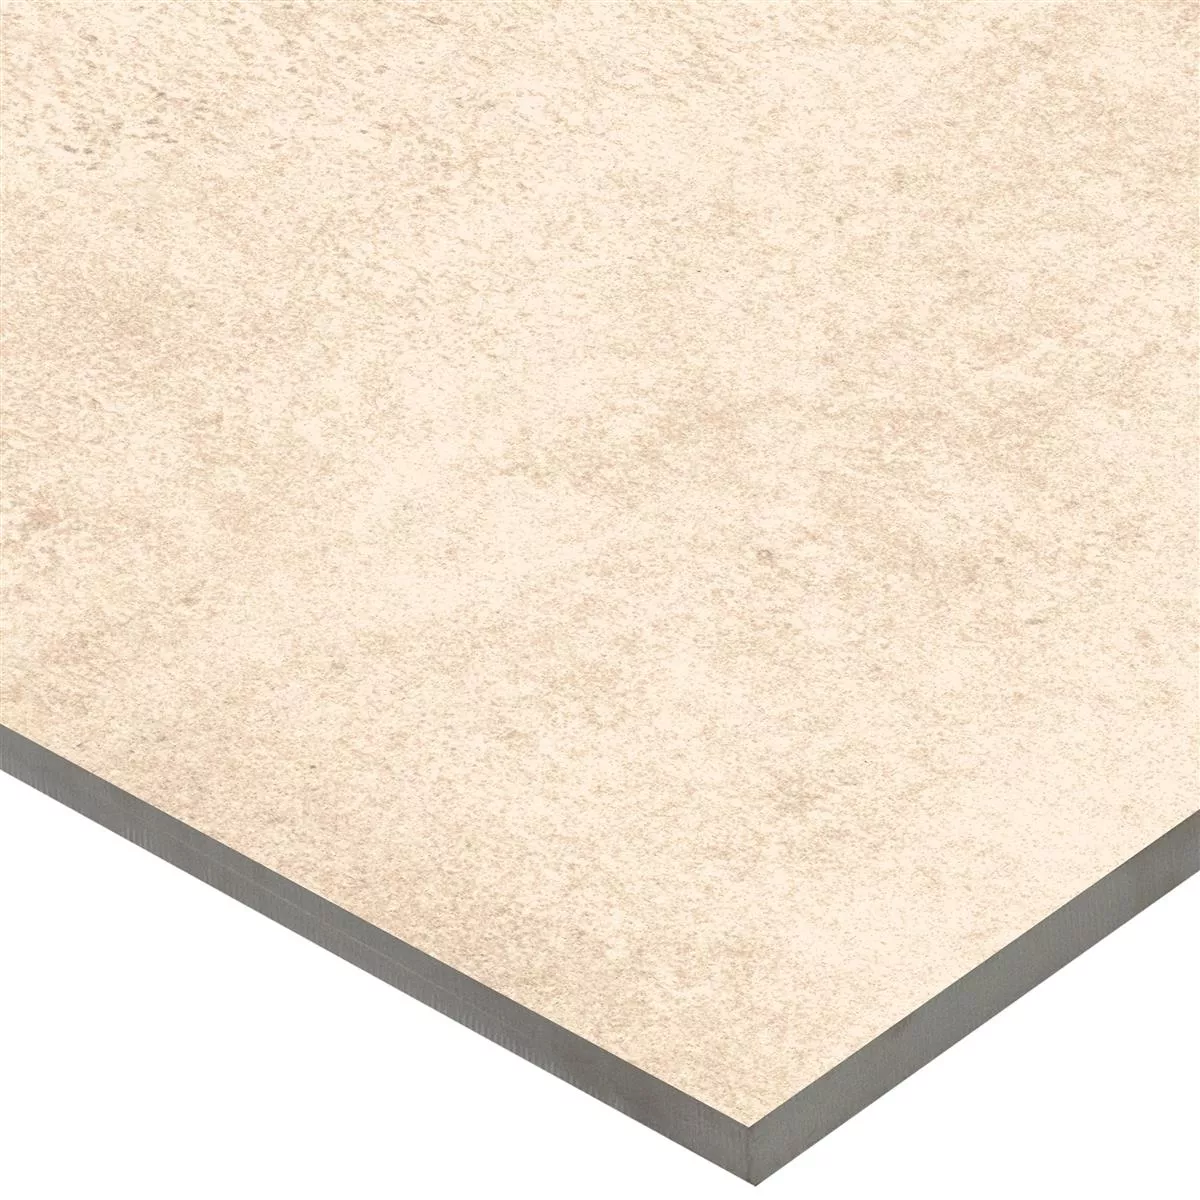 Sample Floor Tiles Stone Optic Riad Mat R9 Beige 30x60cm 